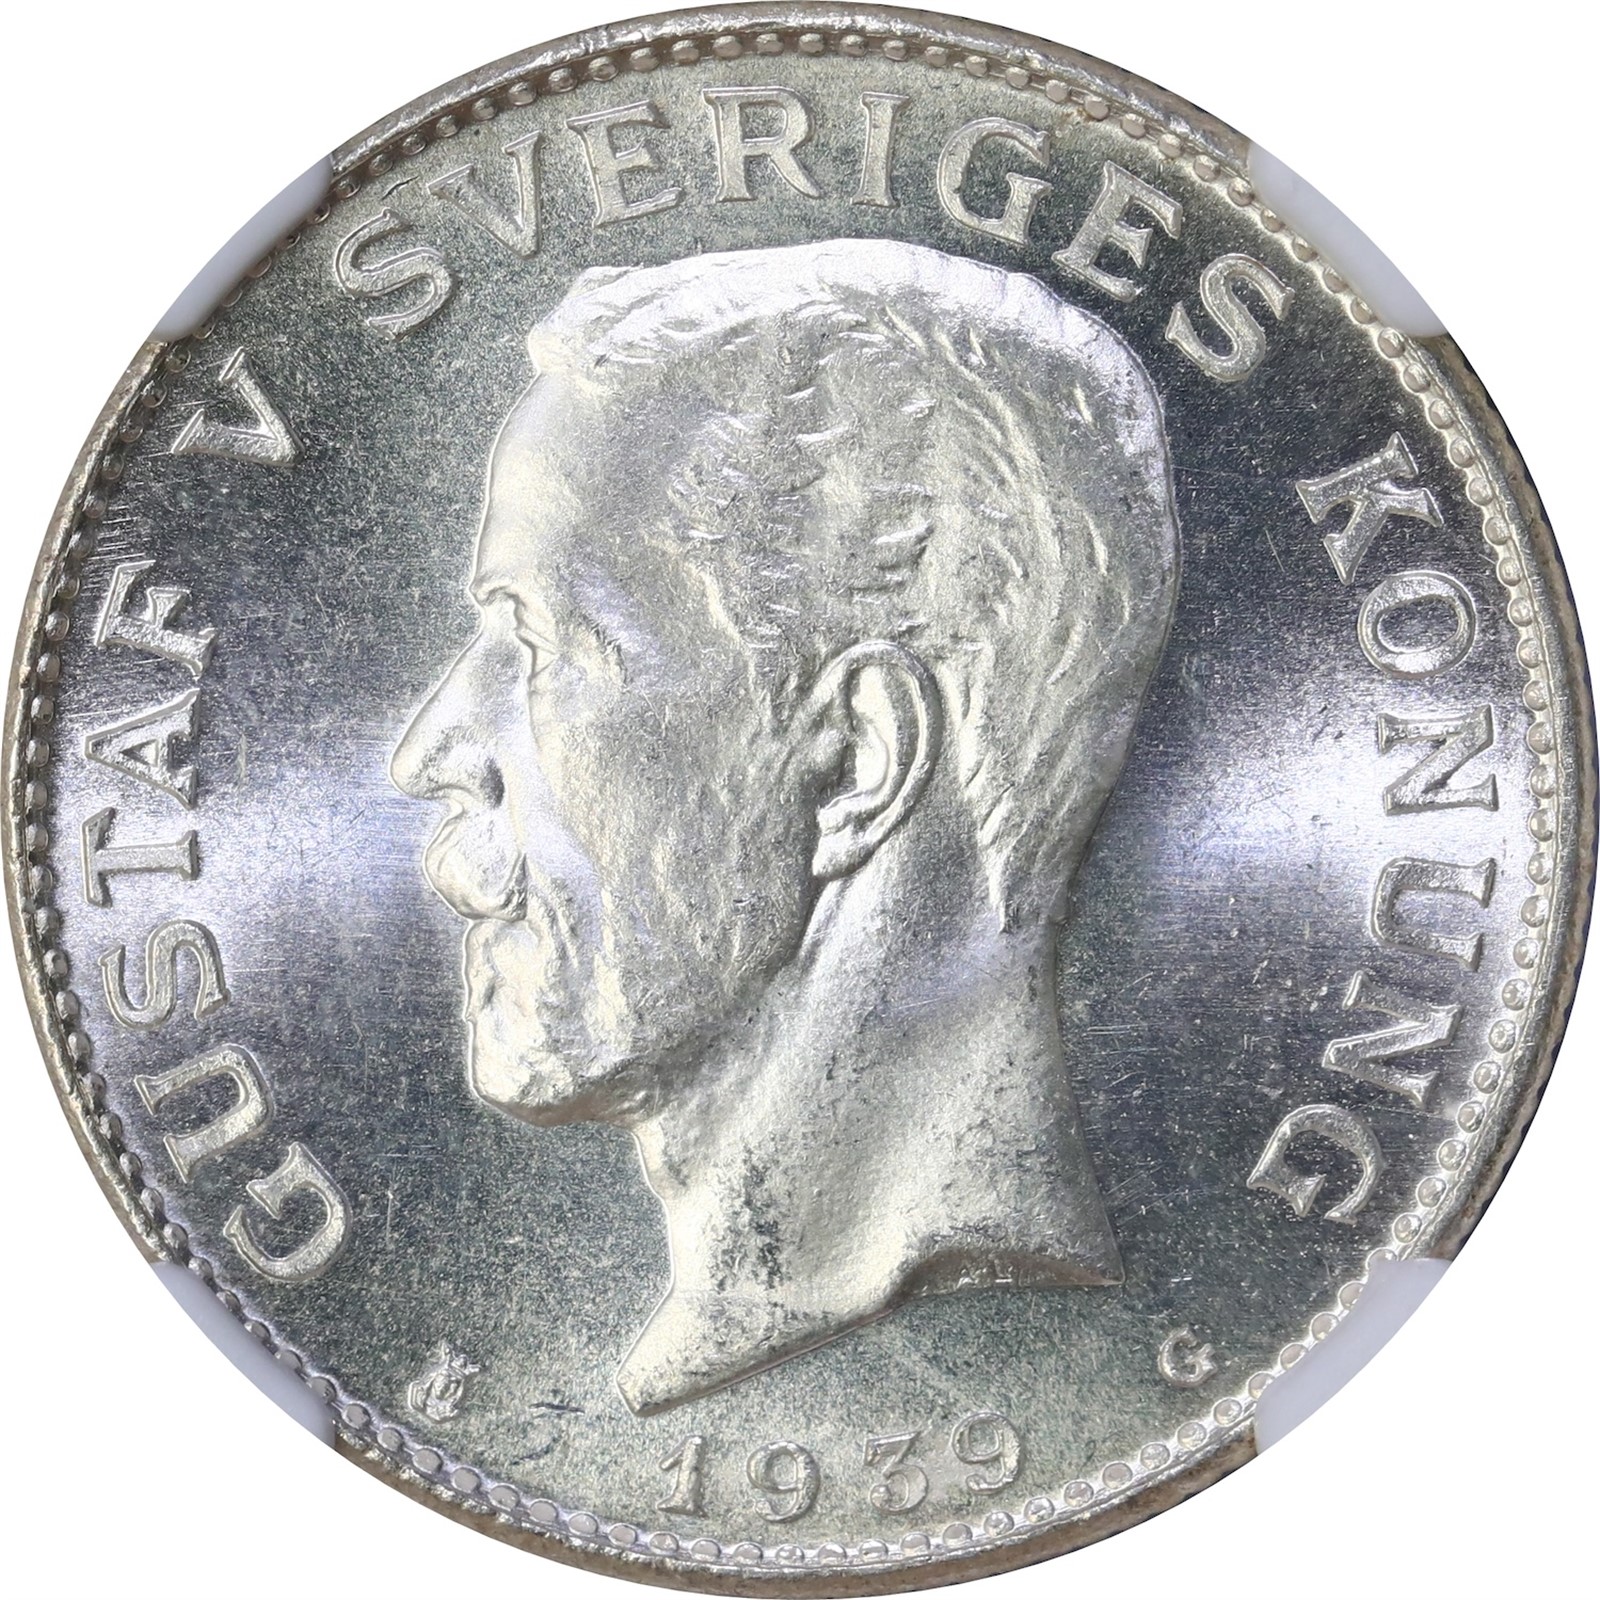 SWEDEN. Gustav V. 1 Krona 1939 NGC MS65